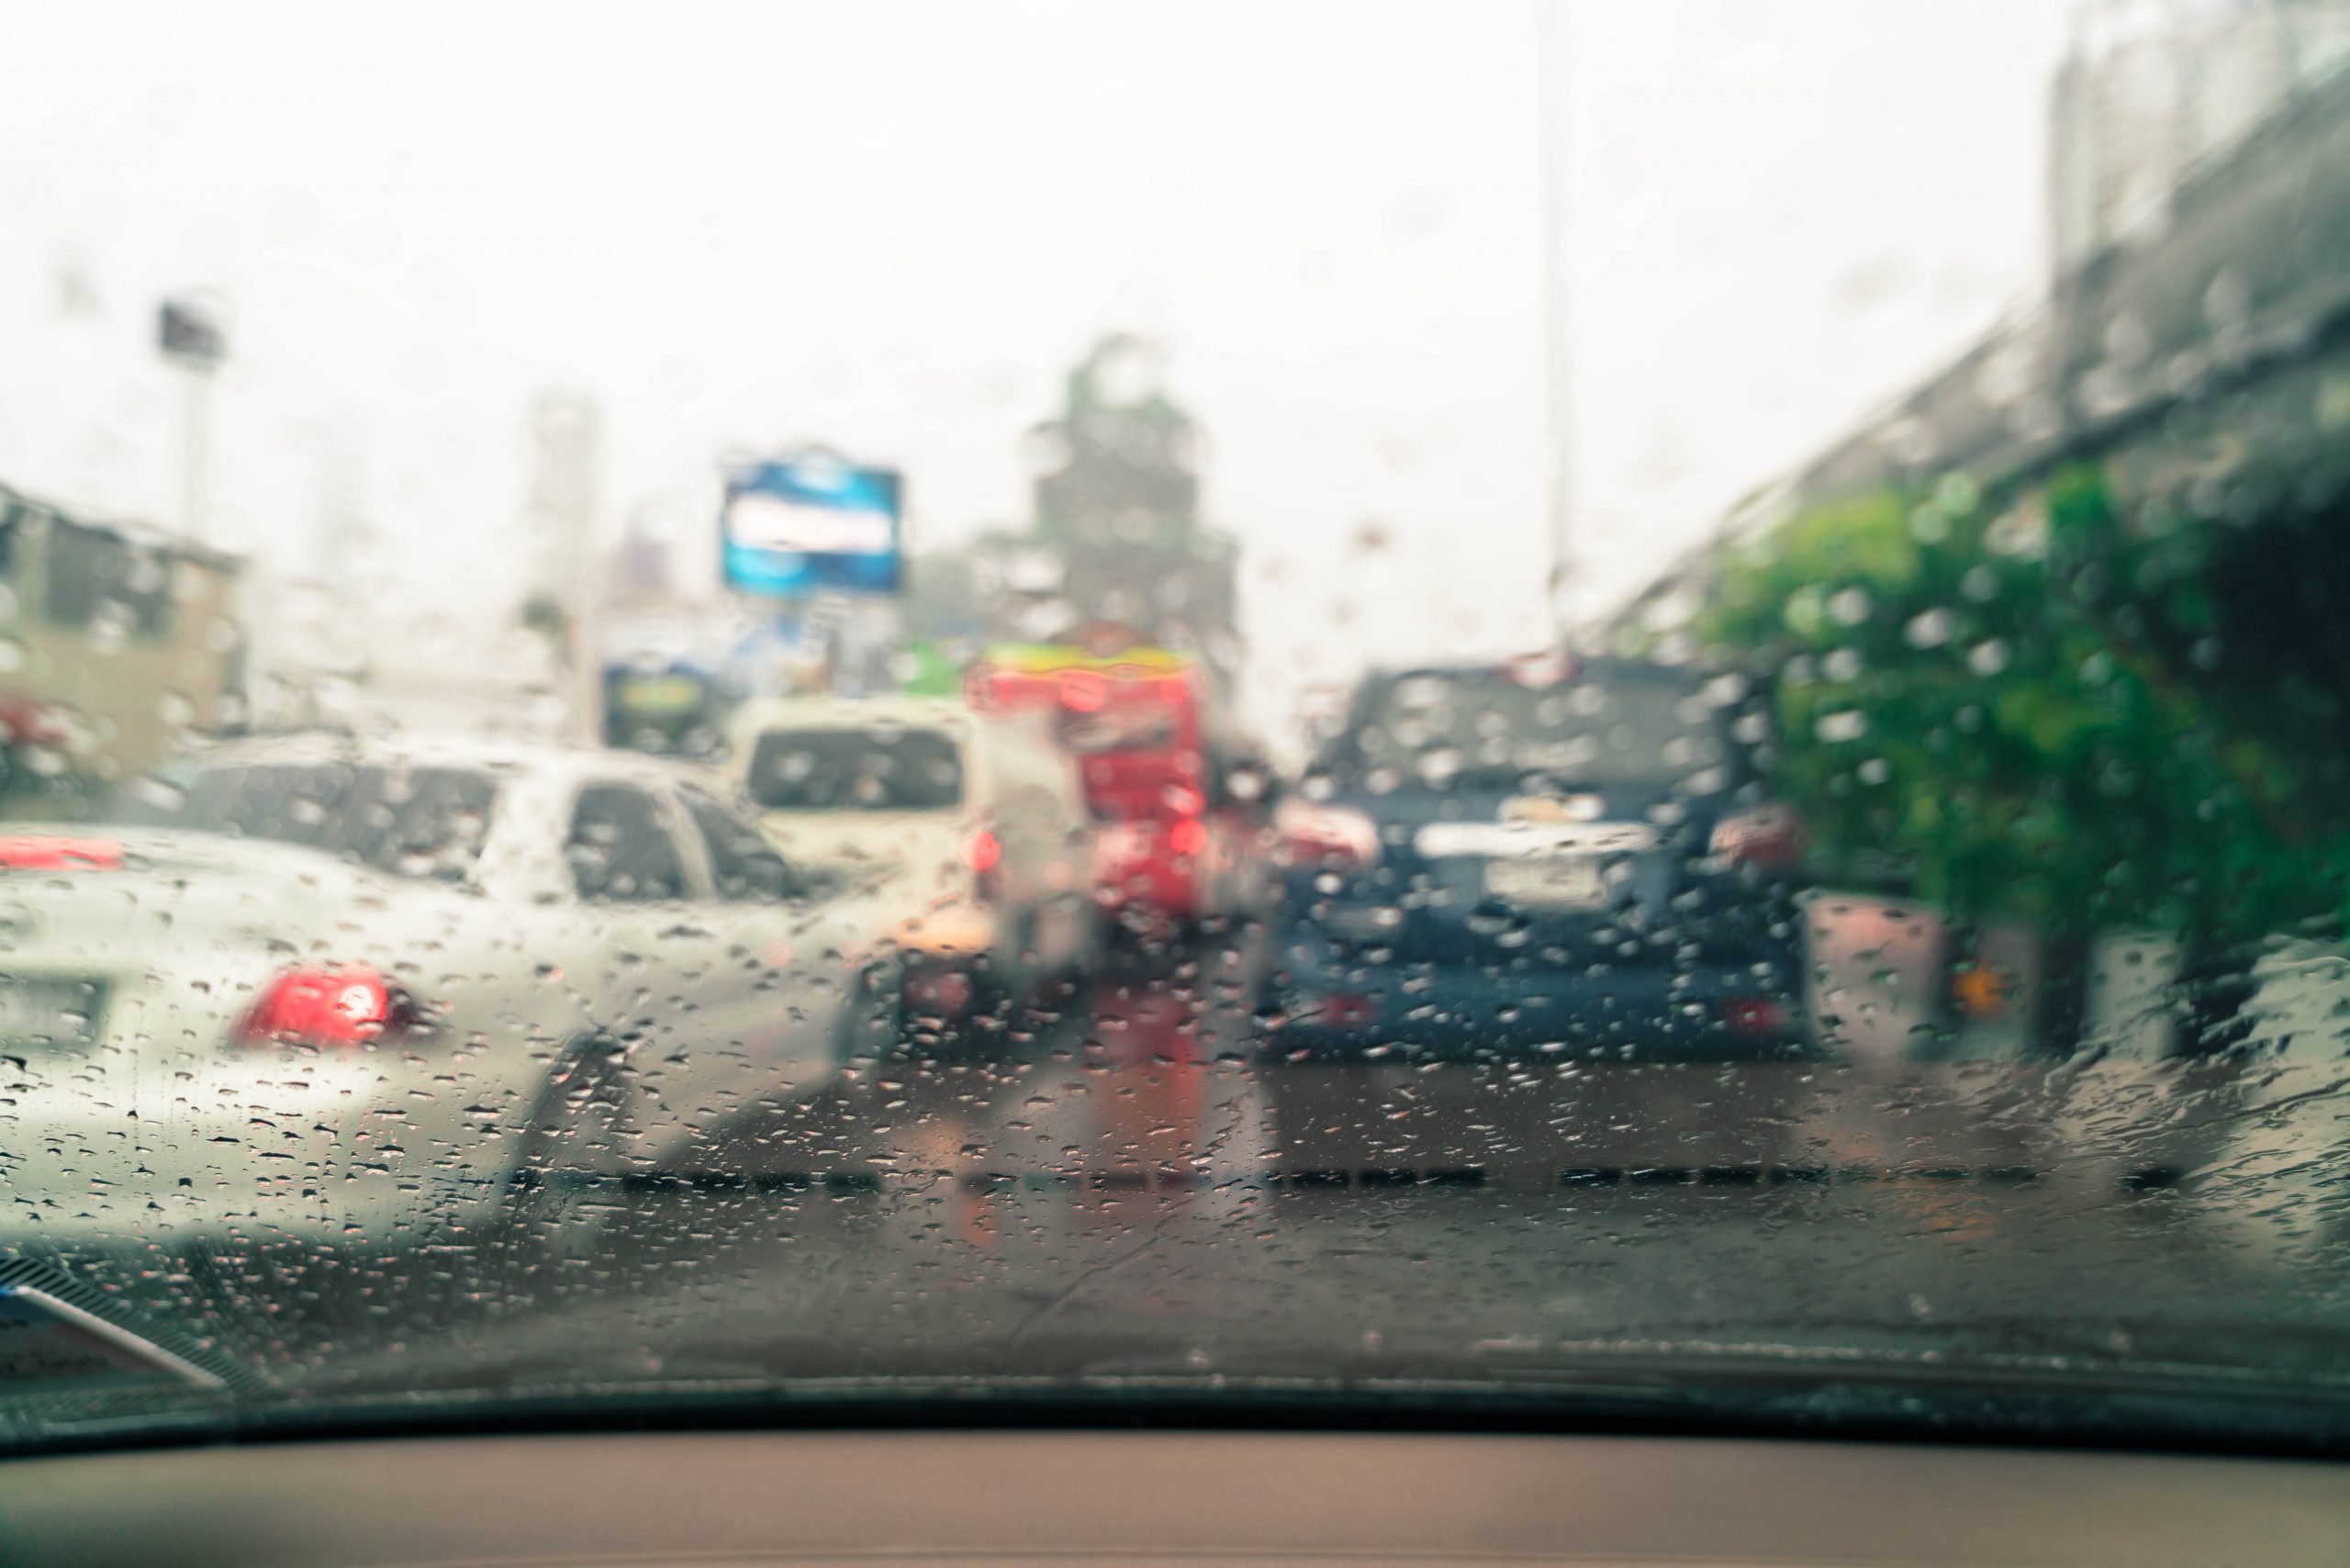 Cuidados com o carro em épocas de chuva forte | Jornal da Orla